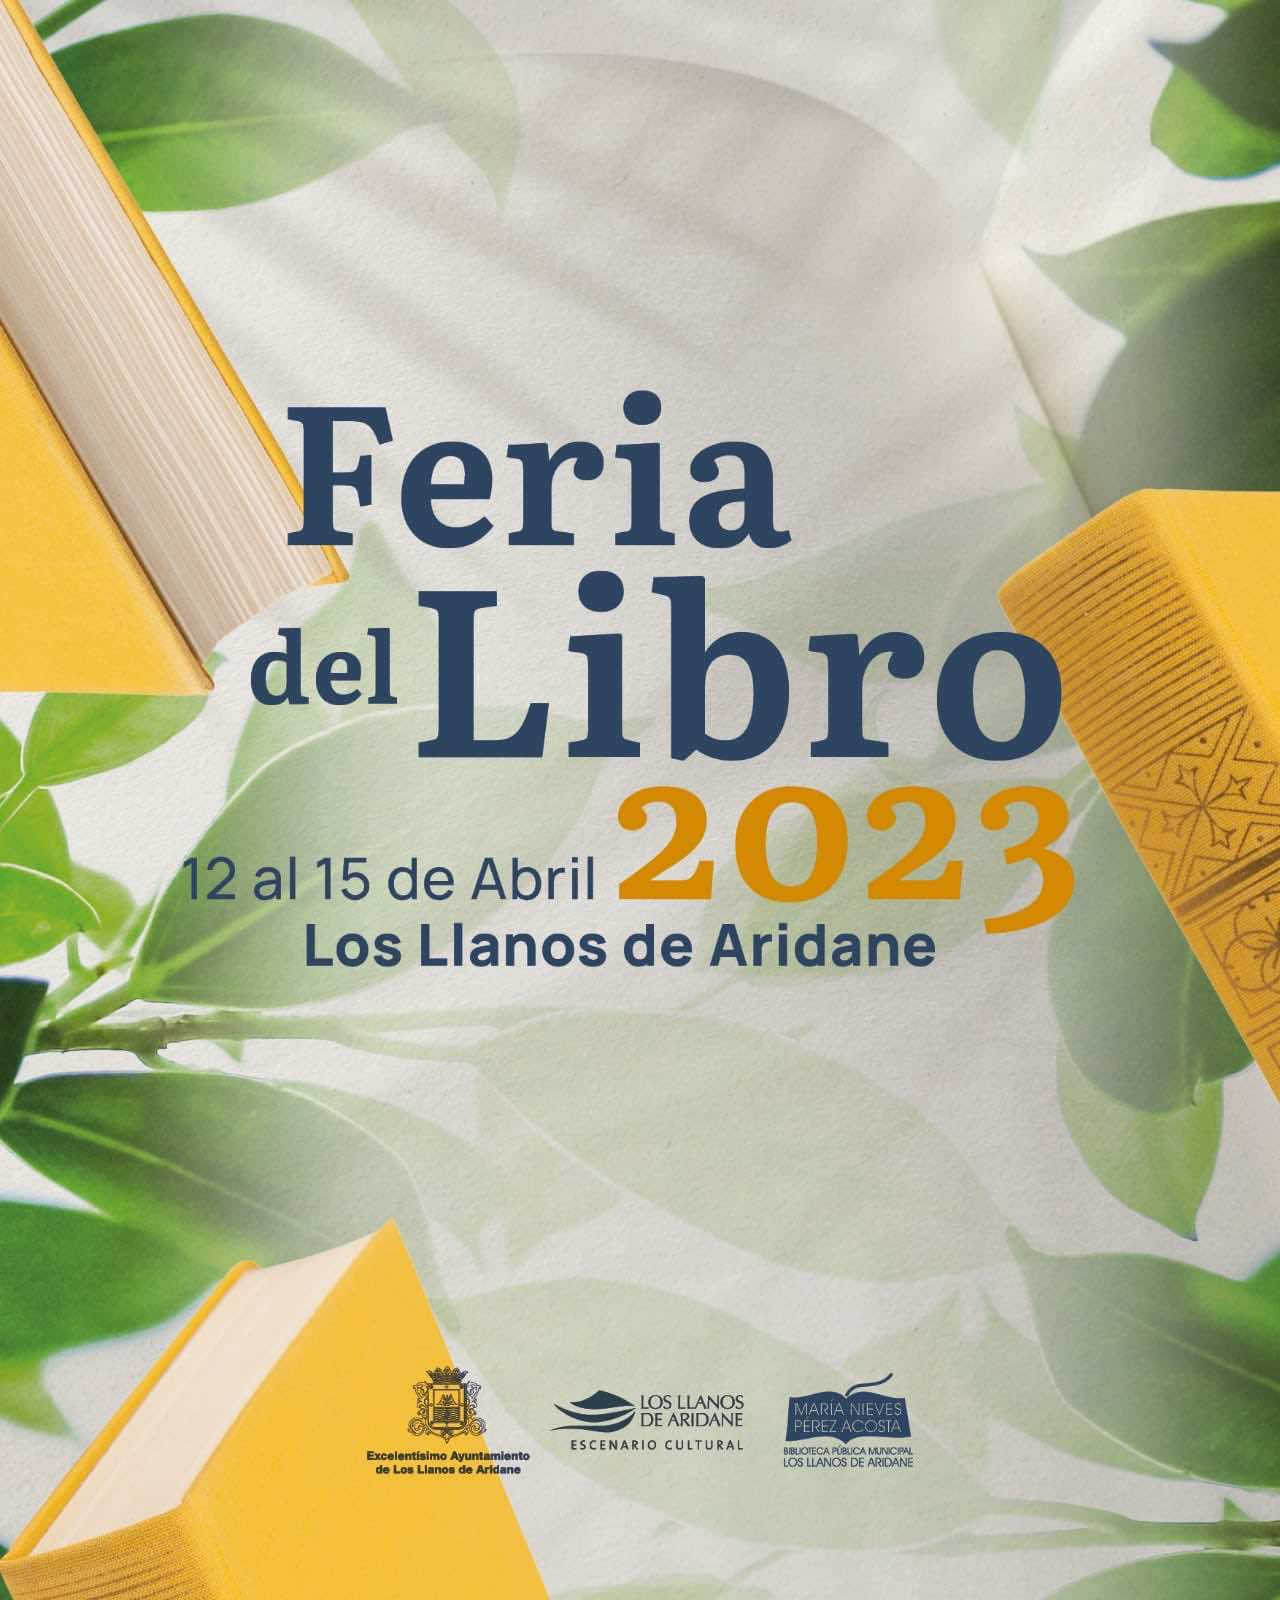 Regresa a Los Llanos de Aridane la Feria del libro del 12 al 15 de abril